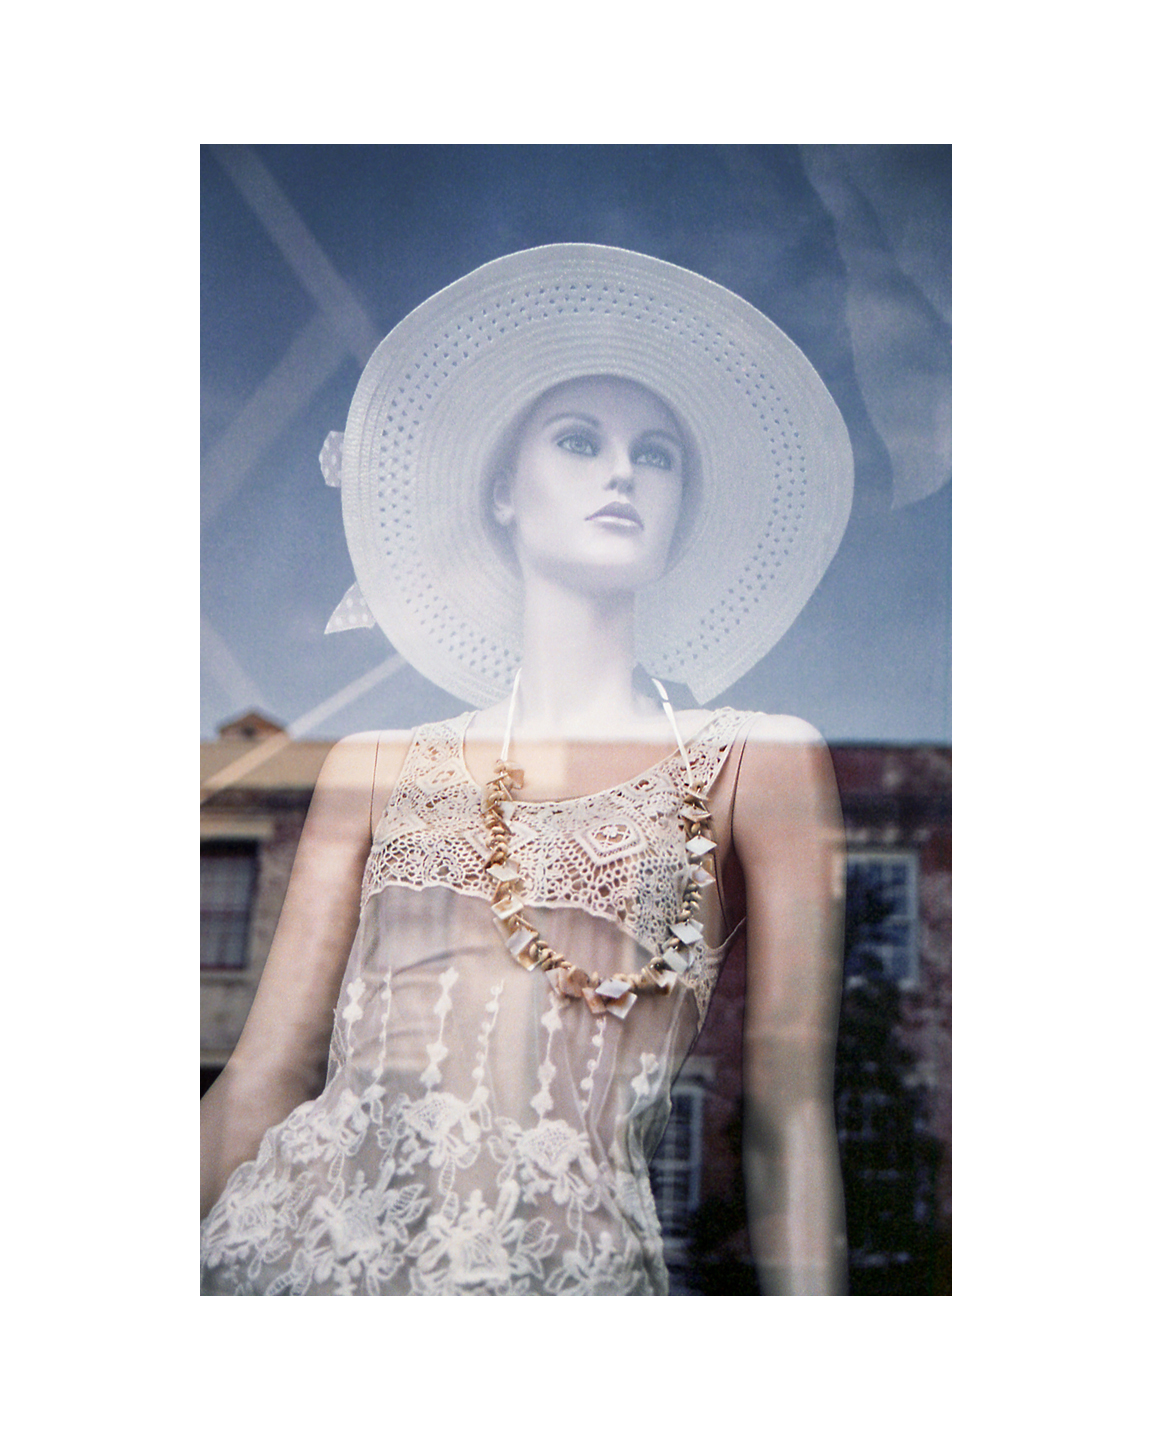 White Hat on Broughton Street - Savannah, GA